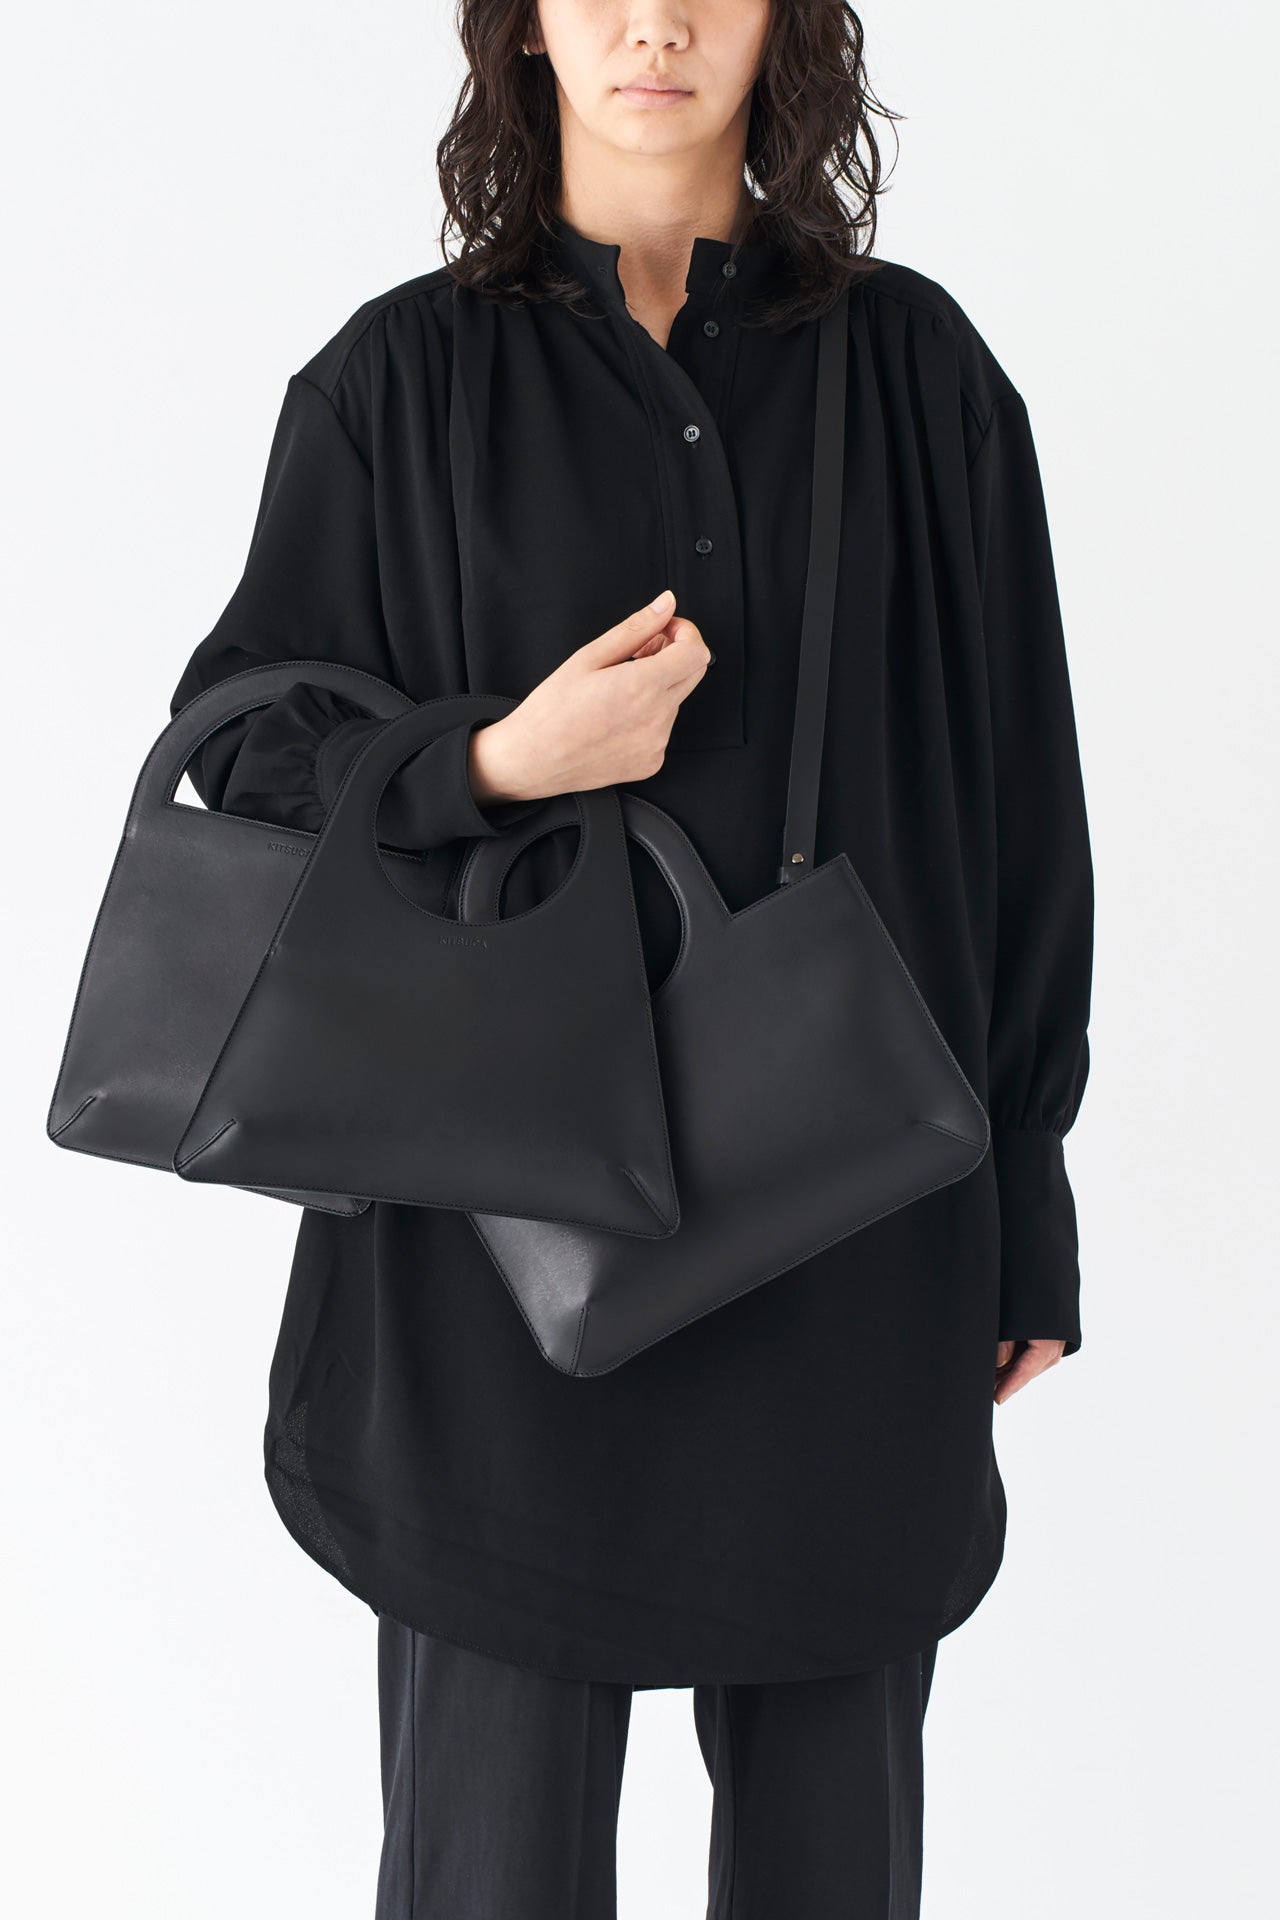 シンプルなレザーのショルダーハンドバッグとモードスタイルの女性